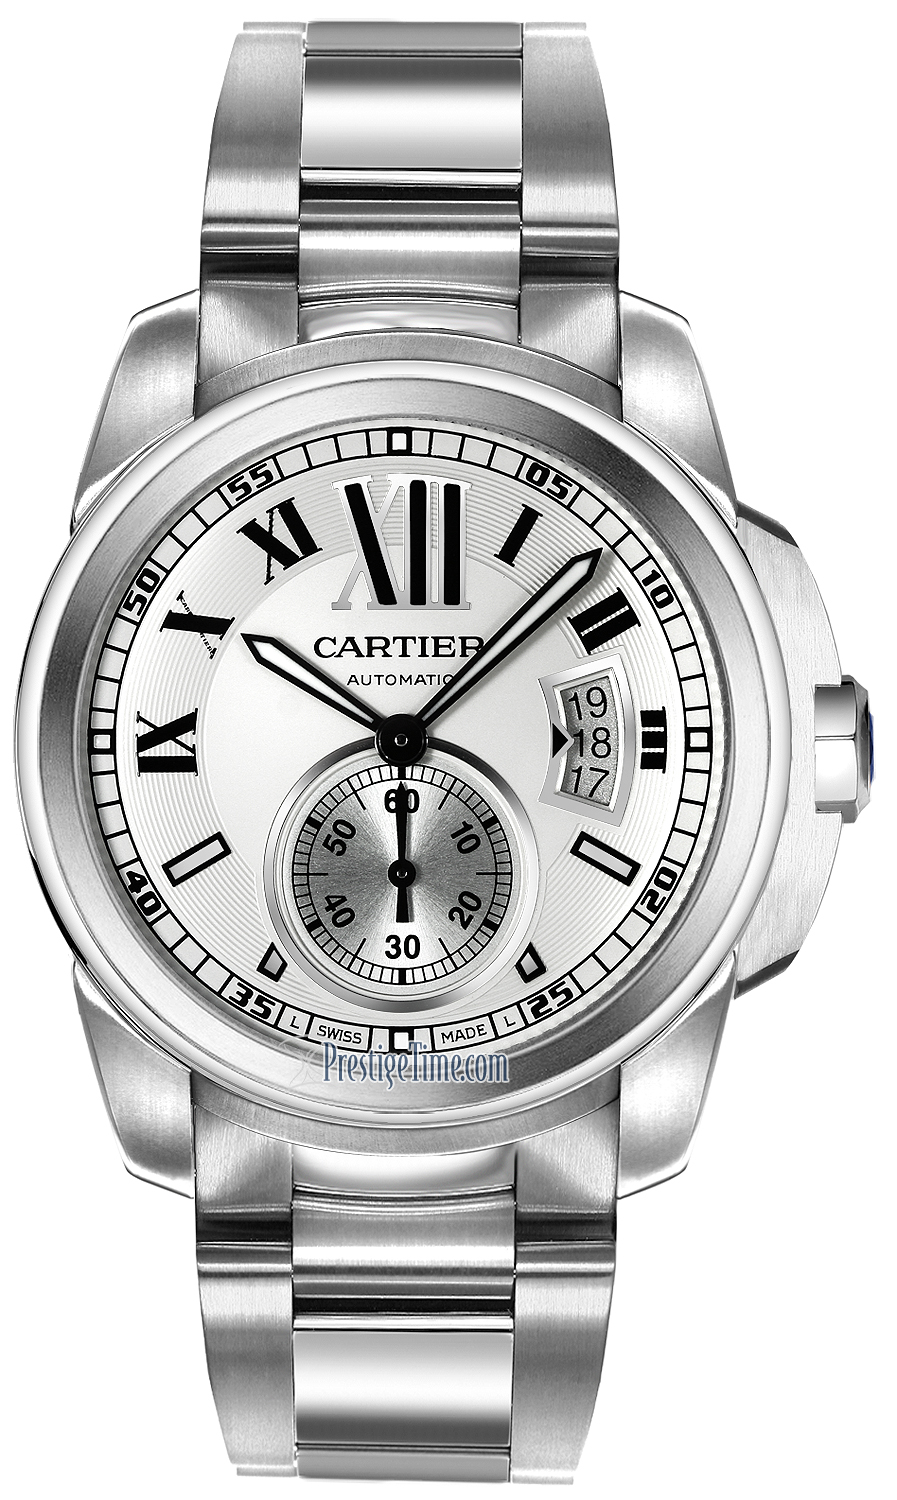 cartier watches calibre calibre price